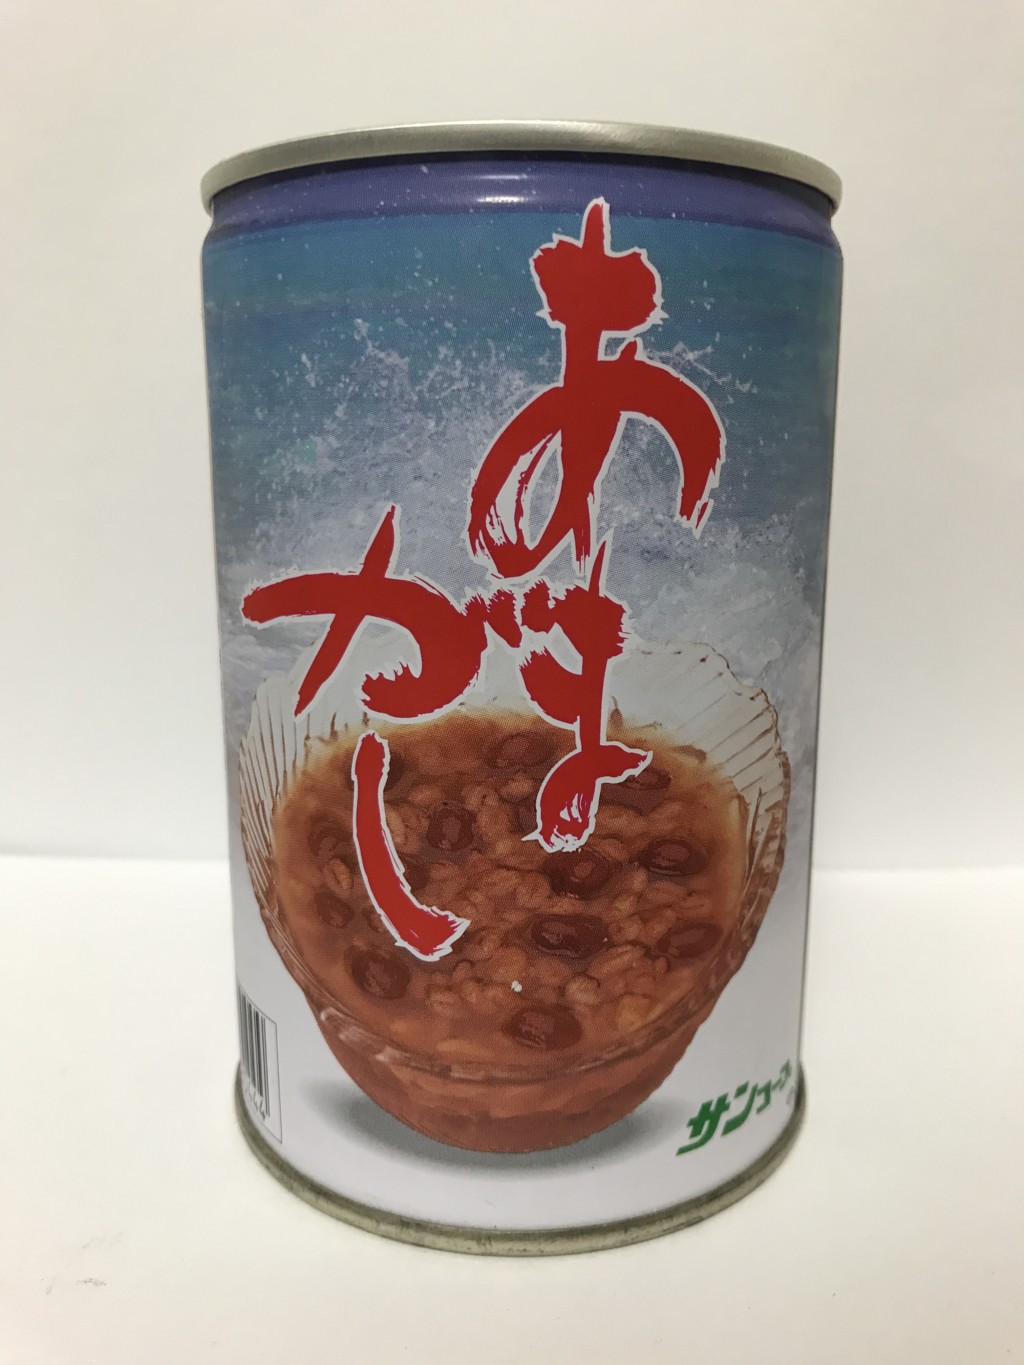 沖縄県農業協同組合が販売する伝統食品『あまがし』